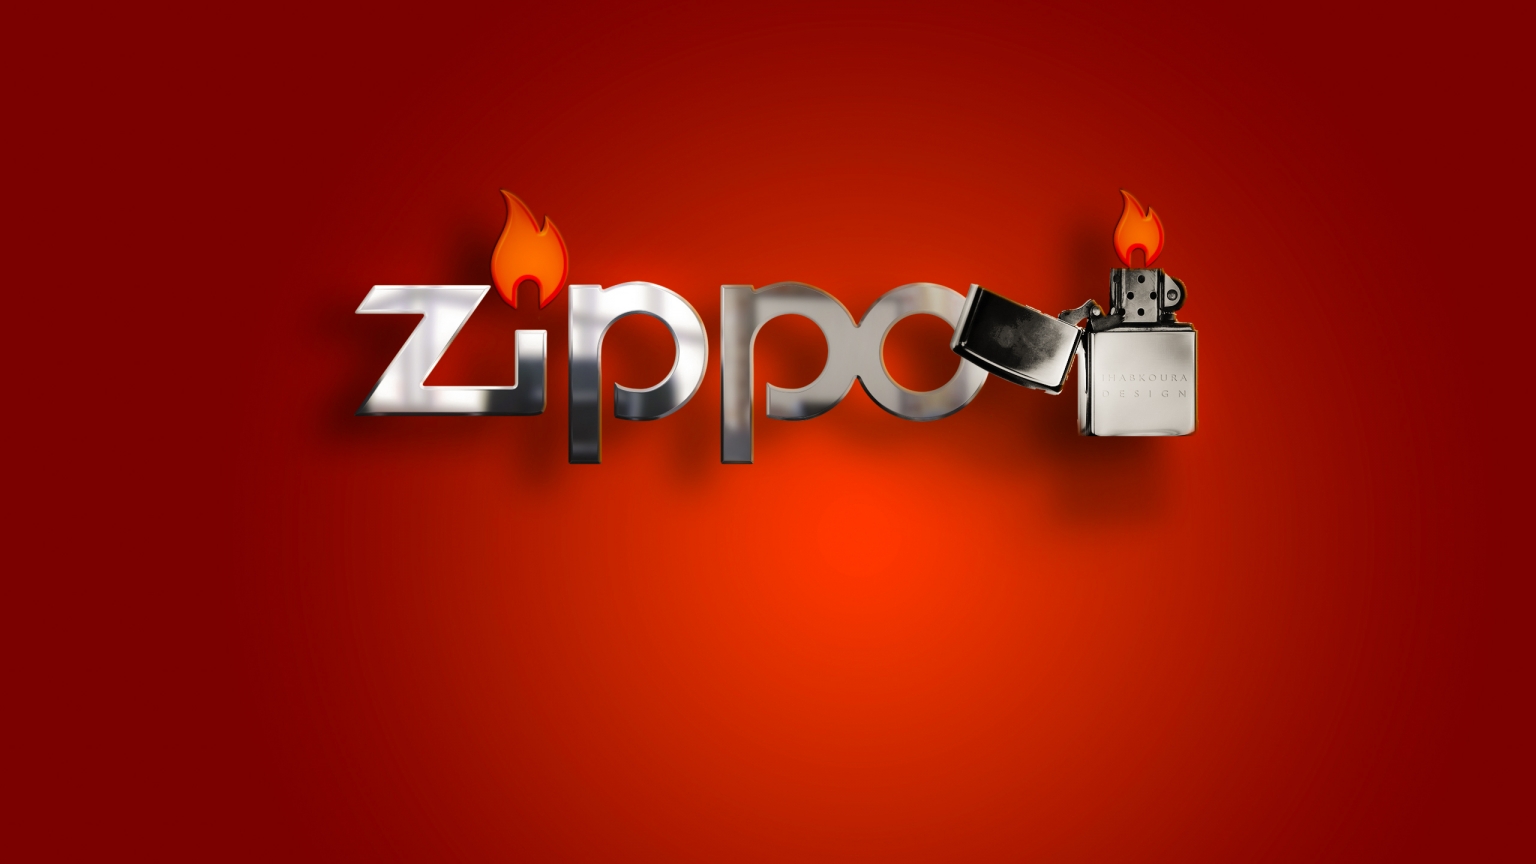 Zippo Lighter for 1536 x 864 HDTV resolution